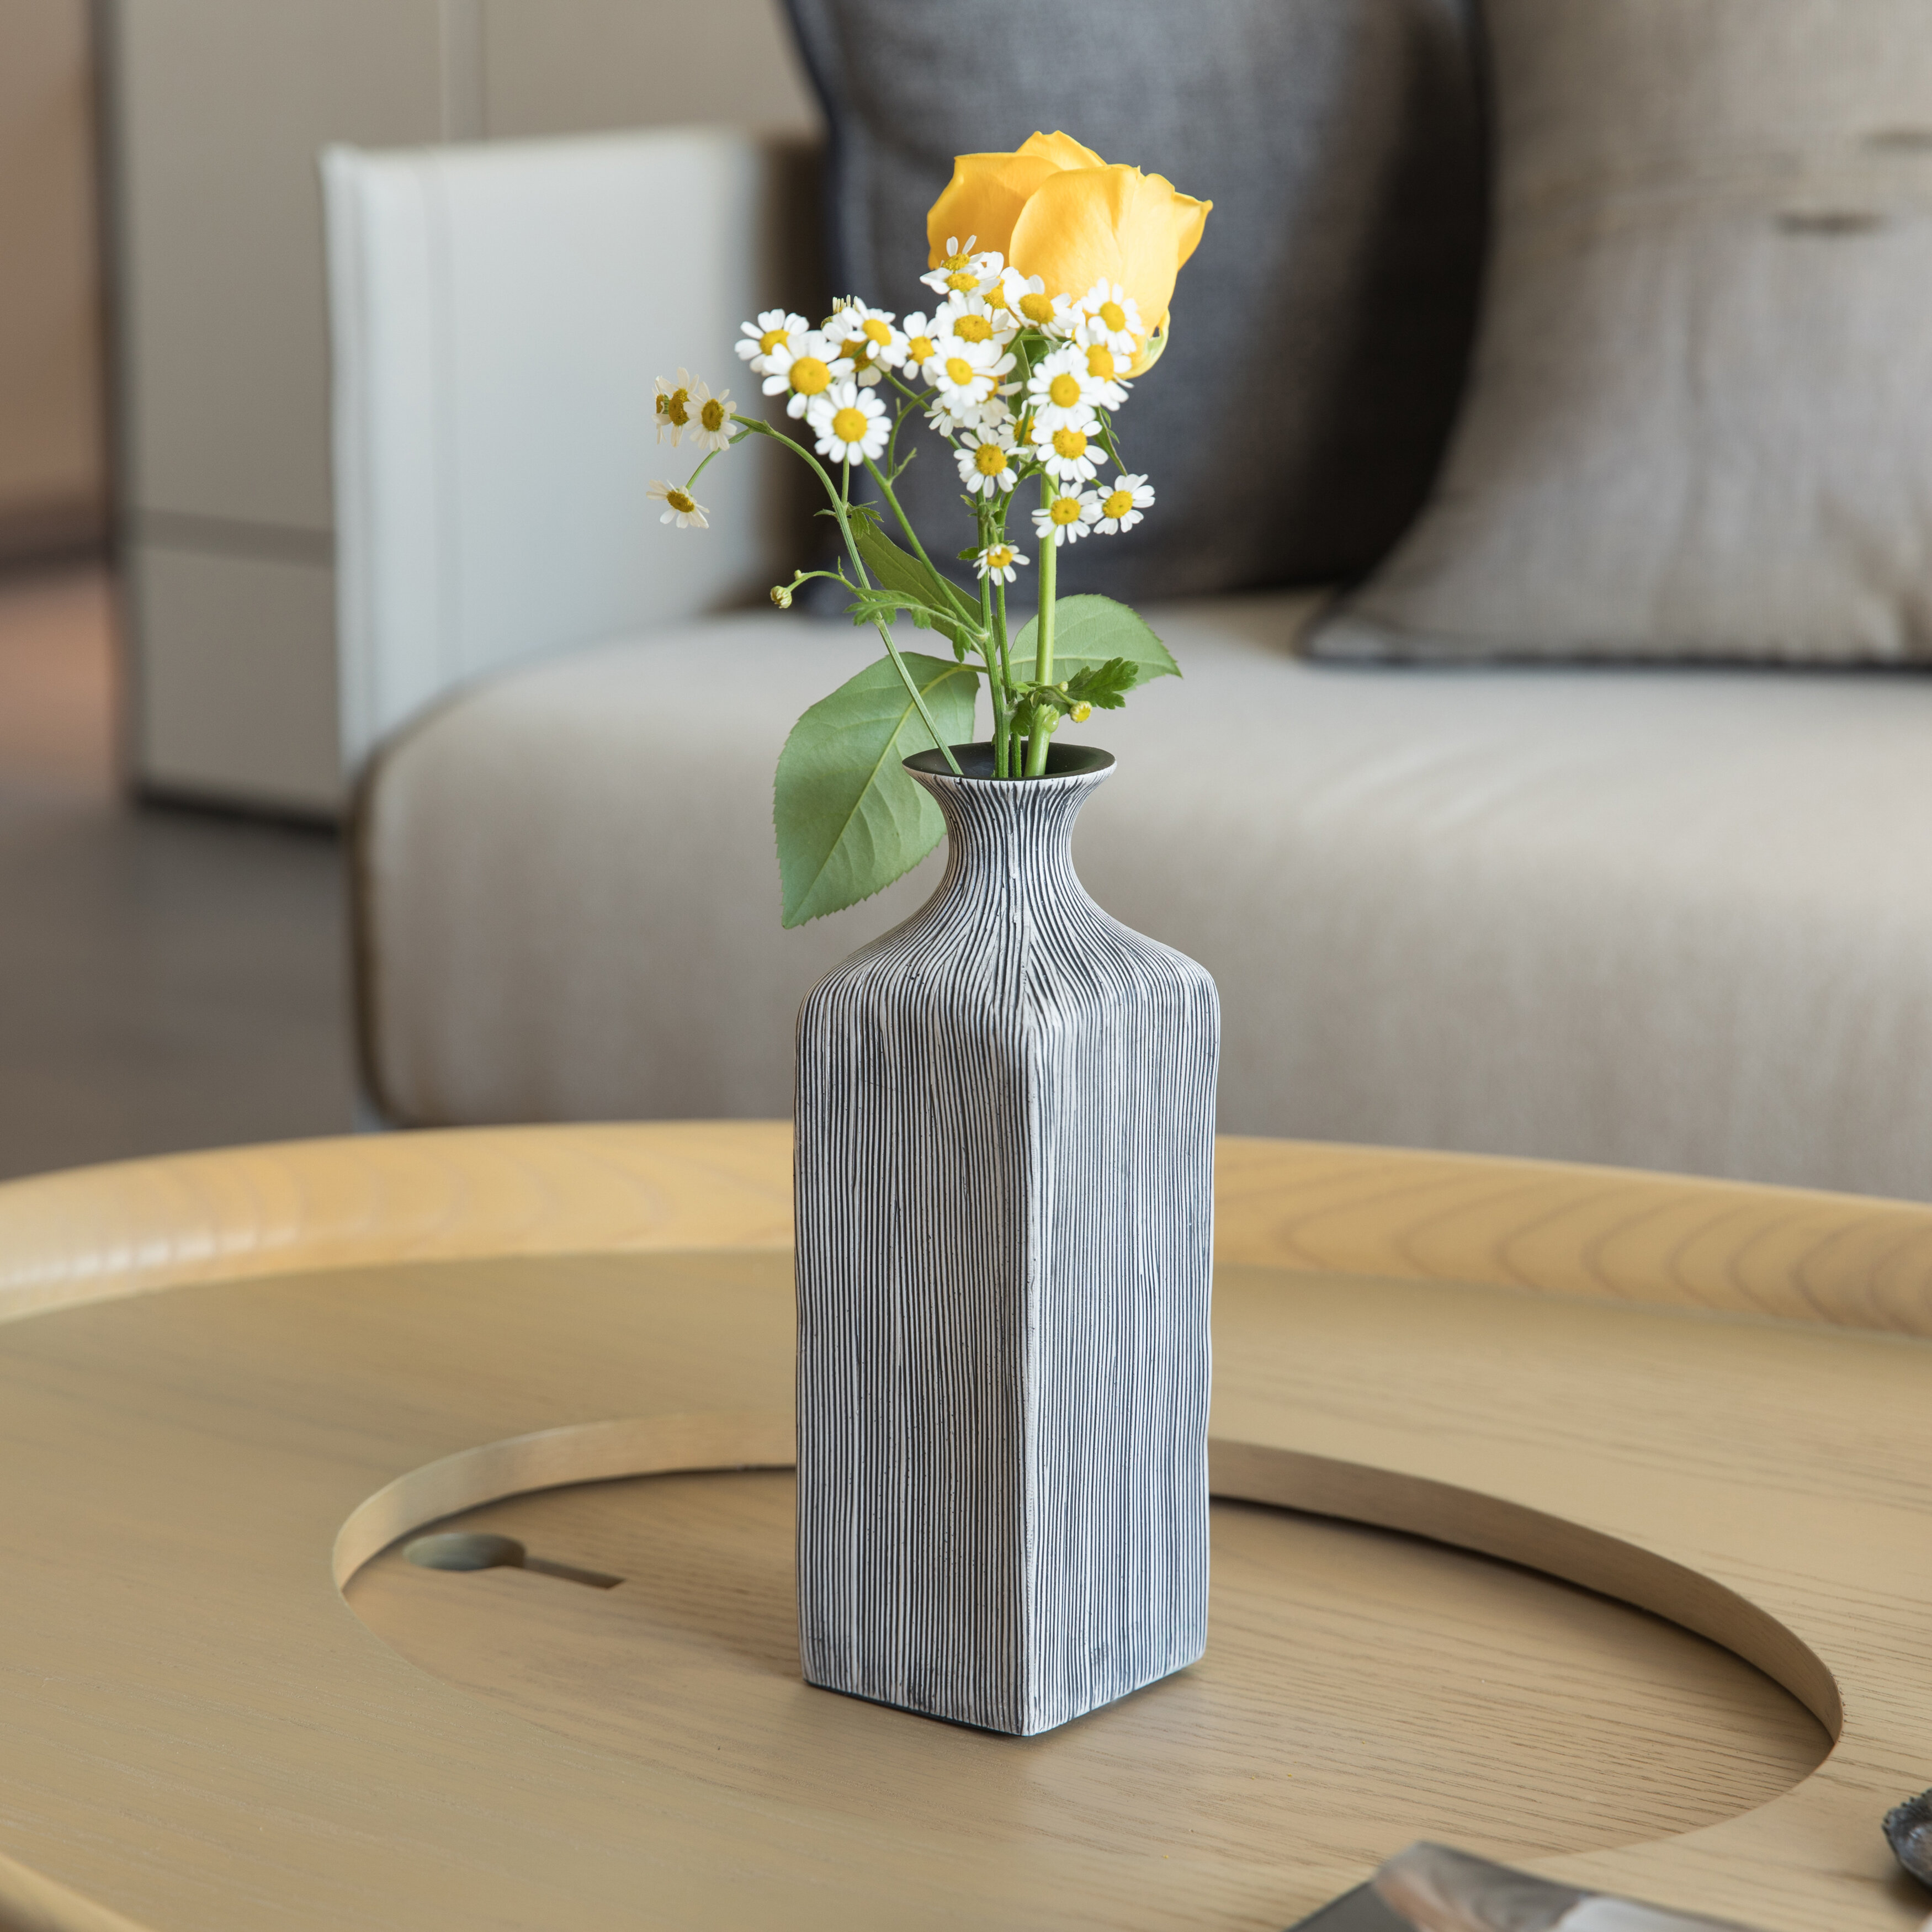 Details about   Vase Simple Home Decoration Flower Vase Flower Pot Imitation Ceramic Plastics 